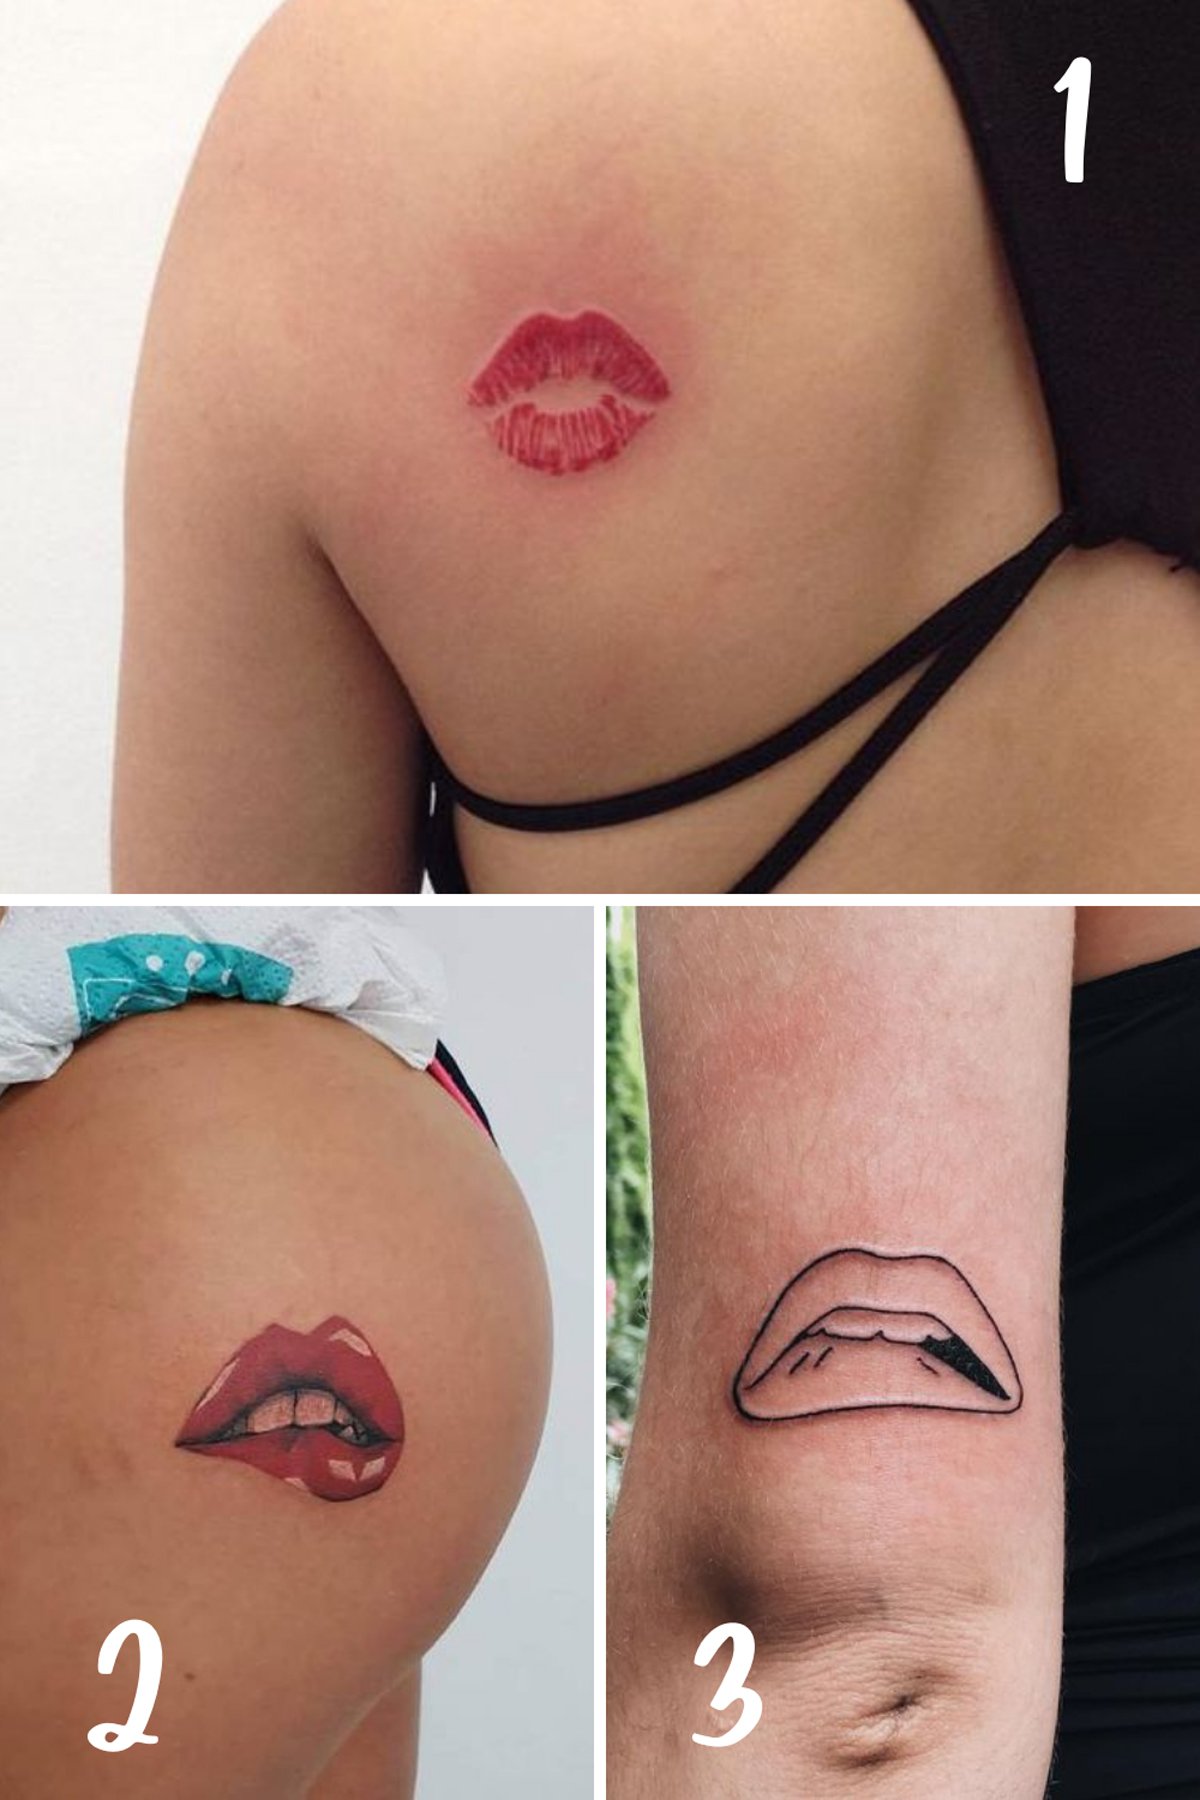 amanda f clark share pics of lips tattoos photos